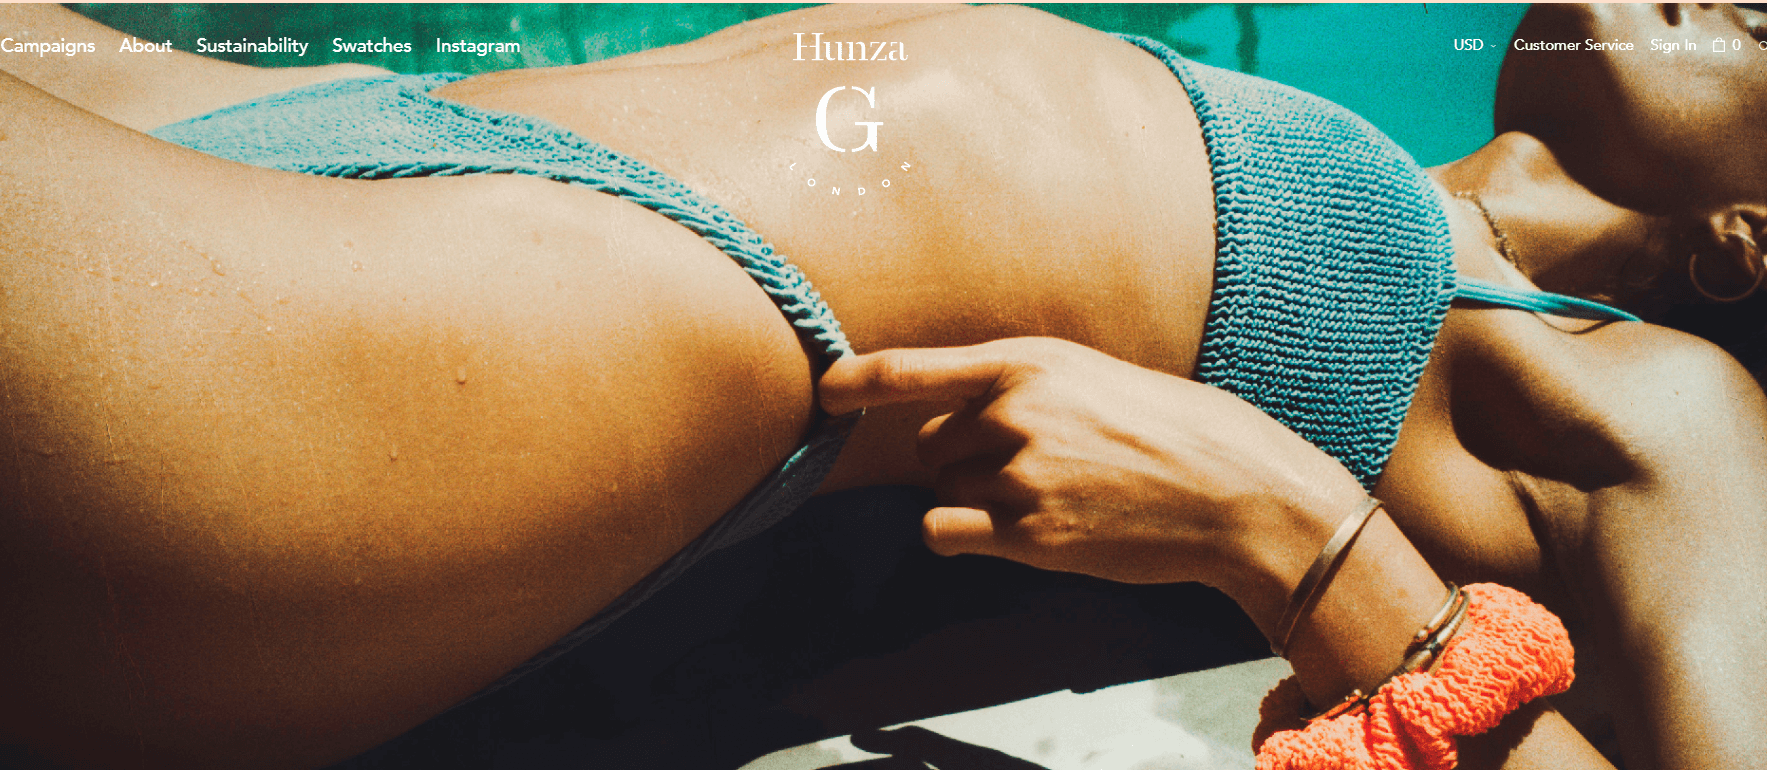 Hunza G官网-伦敦泳衣品牌 hunzag从妙趣横生的印花比基尼到简约无华的连体泳衣